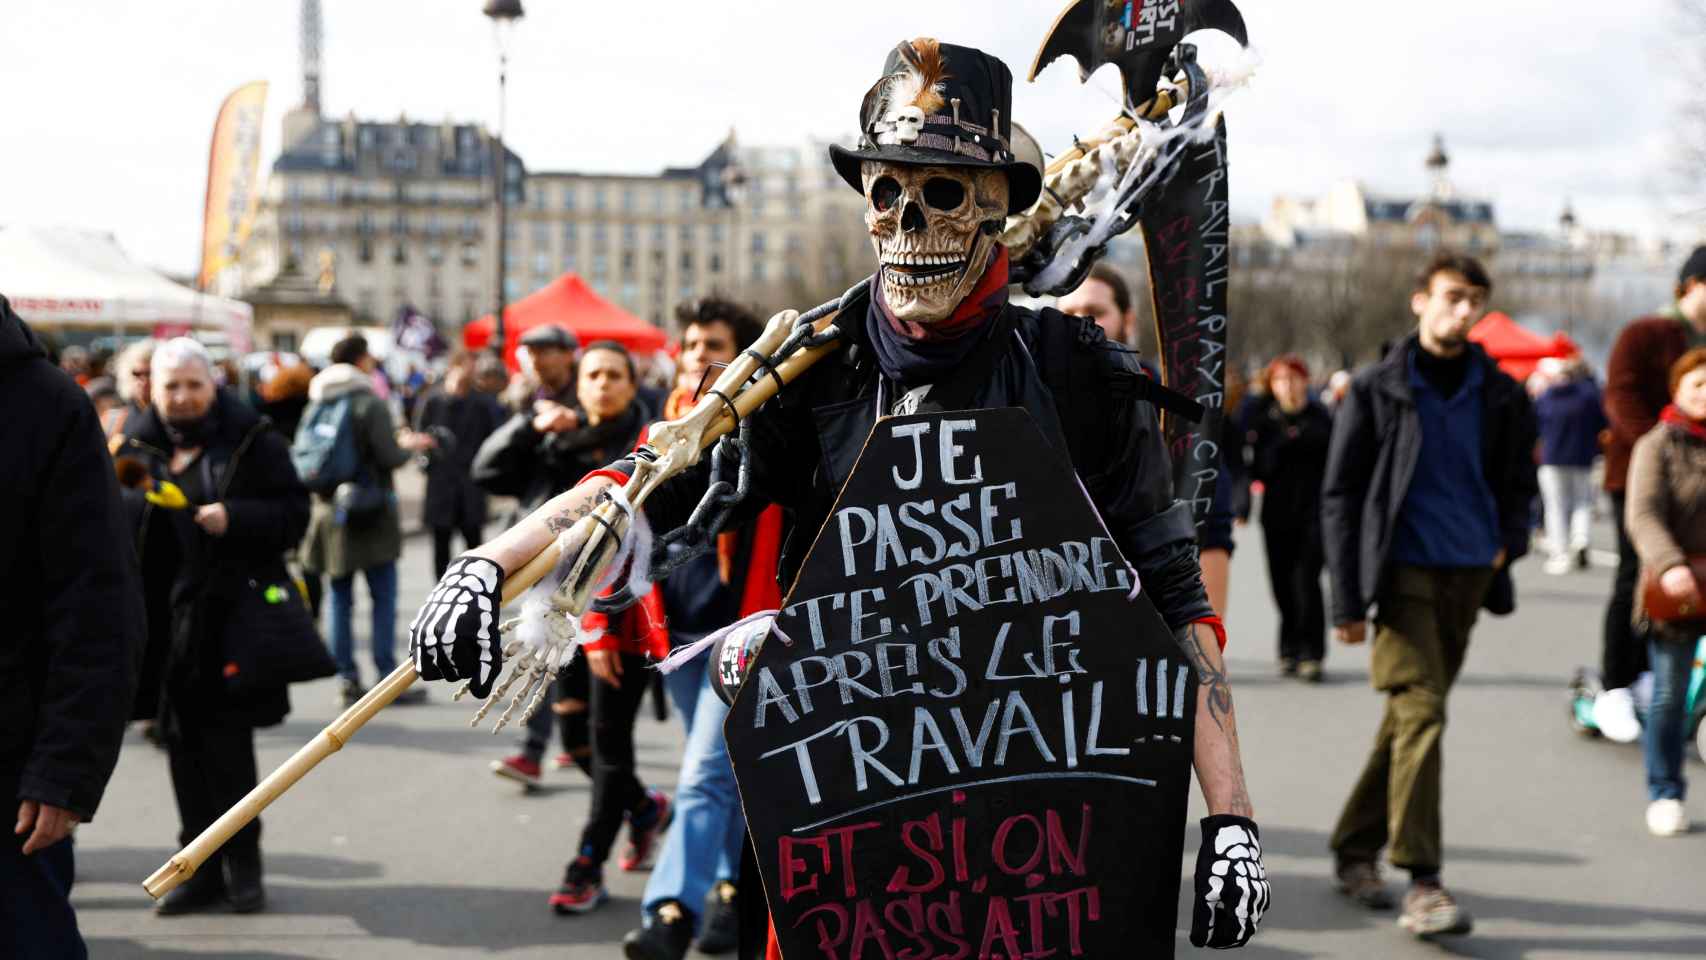 Los manifestantes asisten a una manifestación contra el plan de reforma de pensiones del gobierno francés en París, como parte del octavo día de huelga nacional y protestas en Francia , el 15 de marzo de 2023